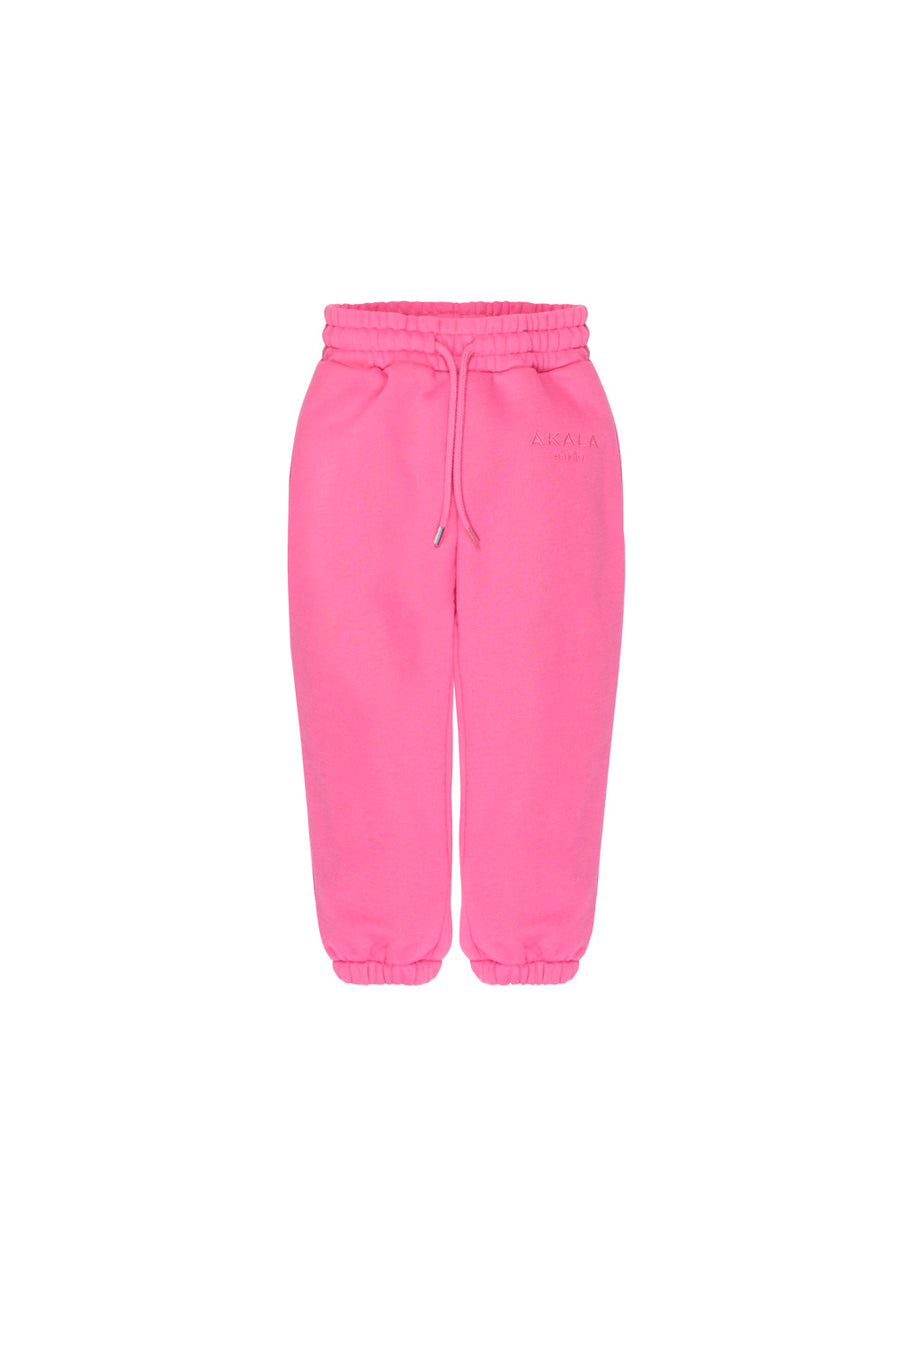 Pink Pants Girl